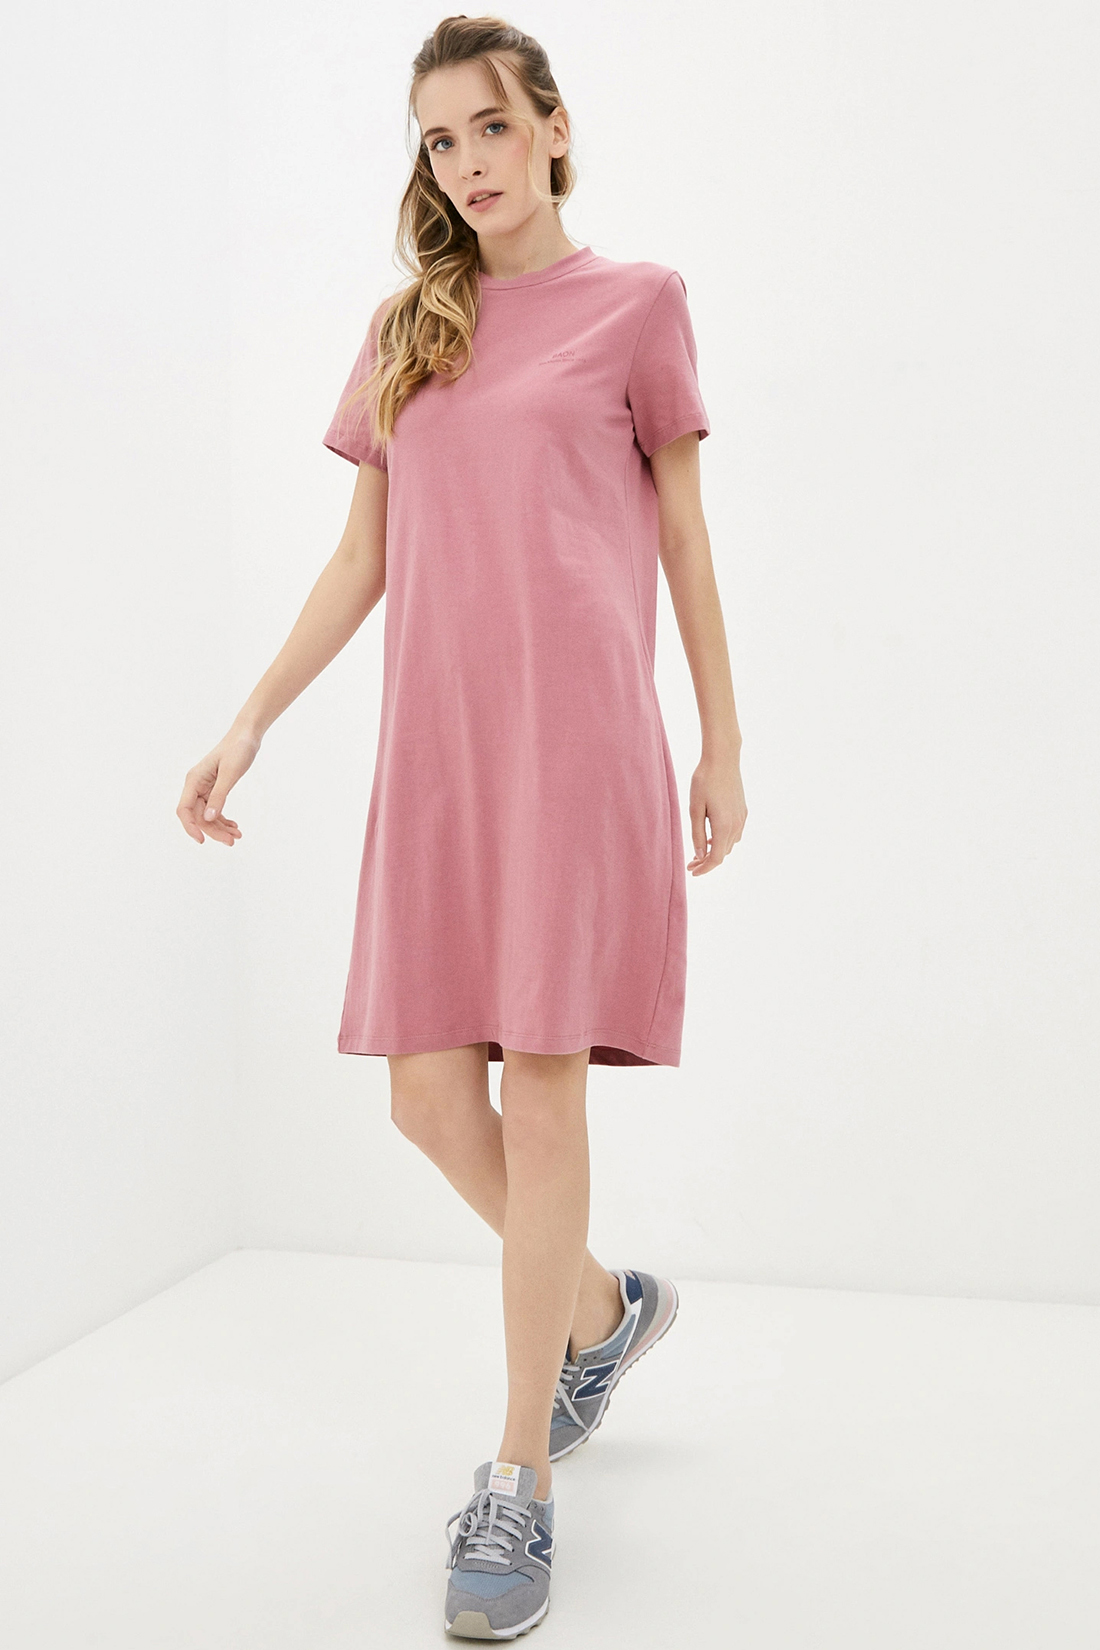 Платье (арт. baon B451033), размер XXL, цвет розовый Платье (арт. baon B451033) - фото 1